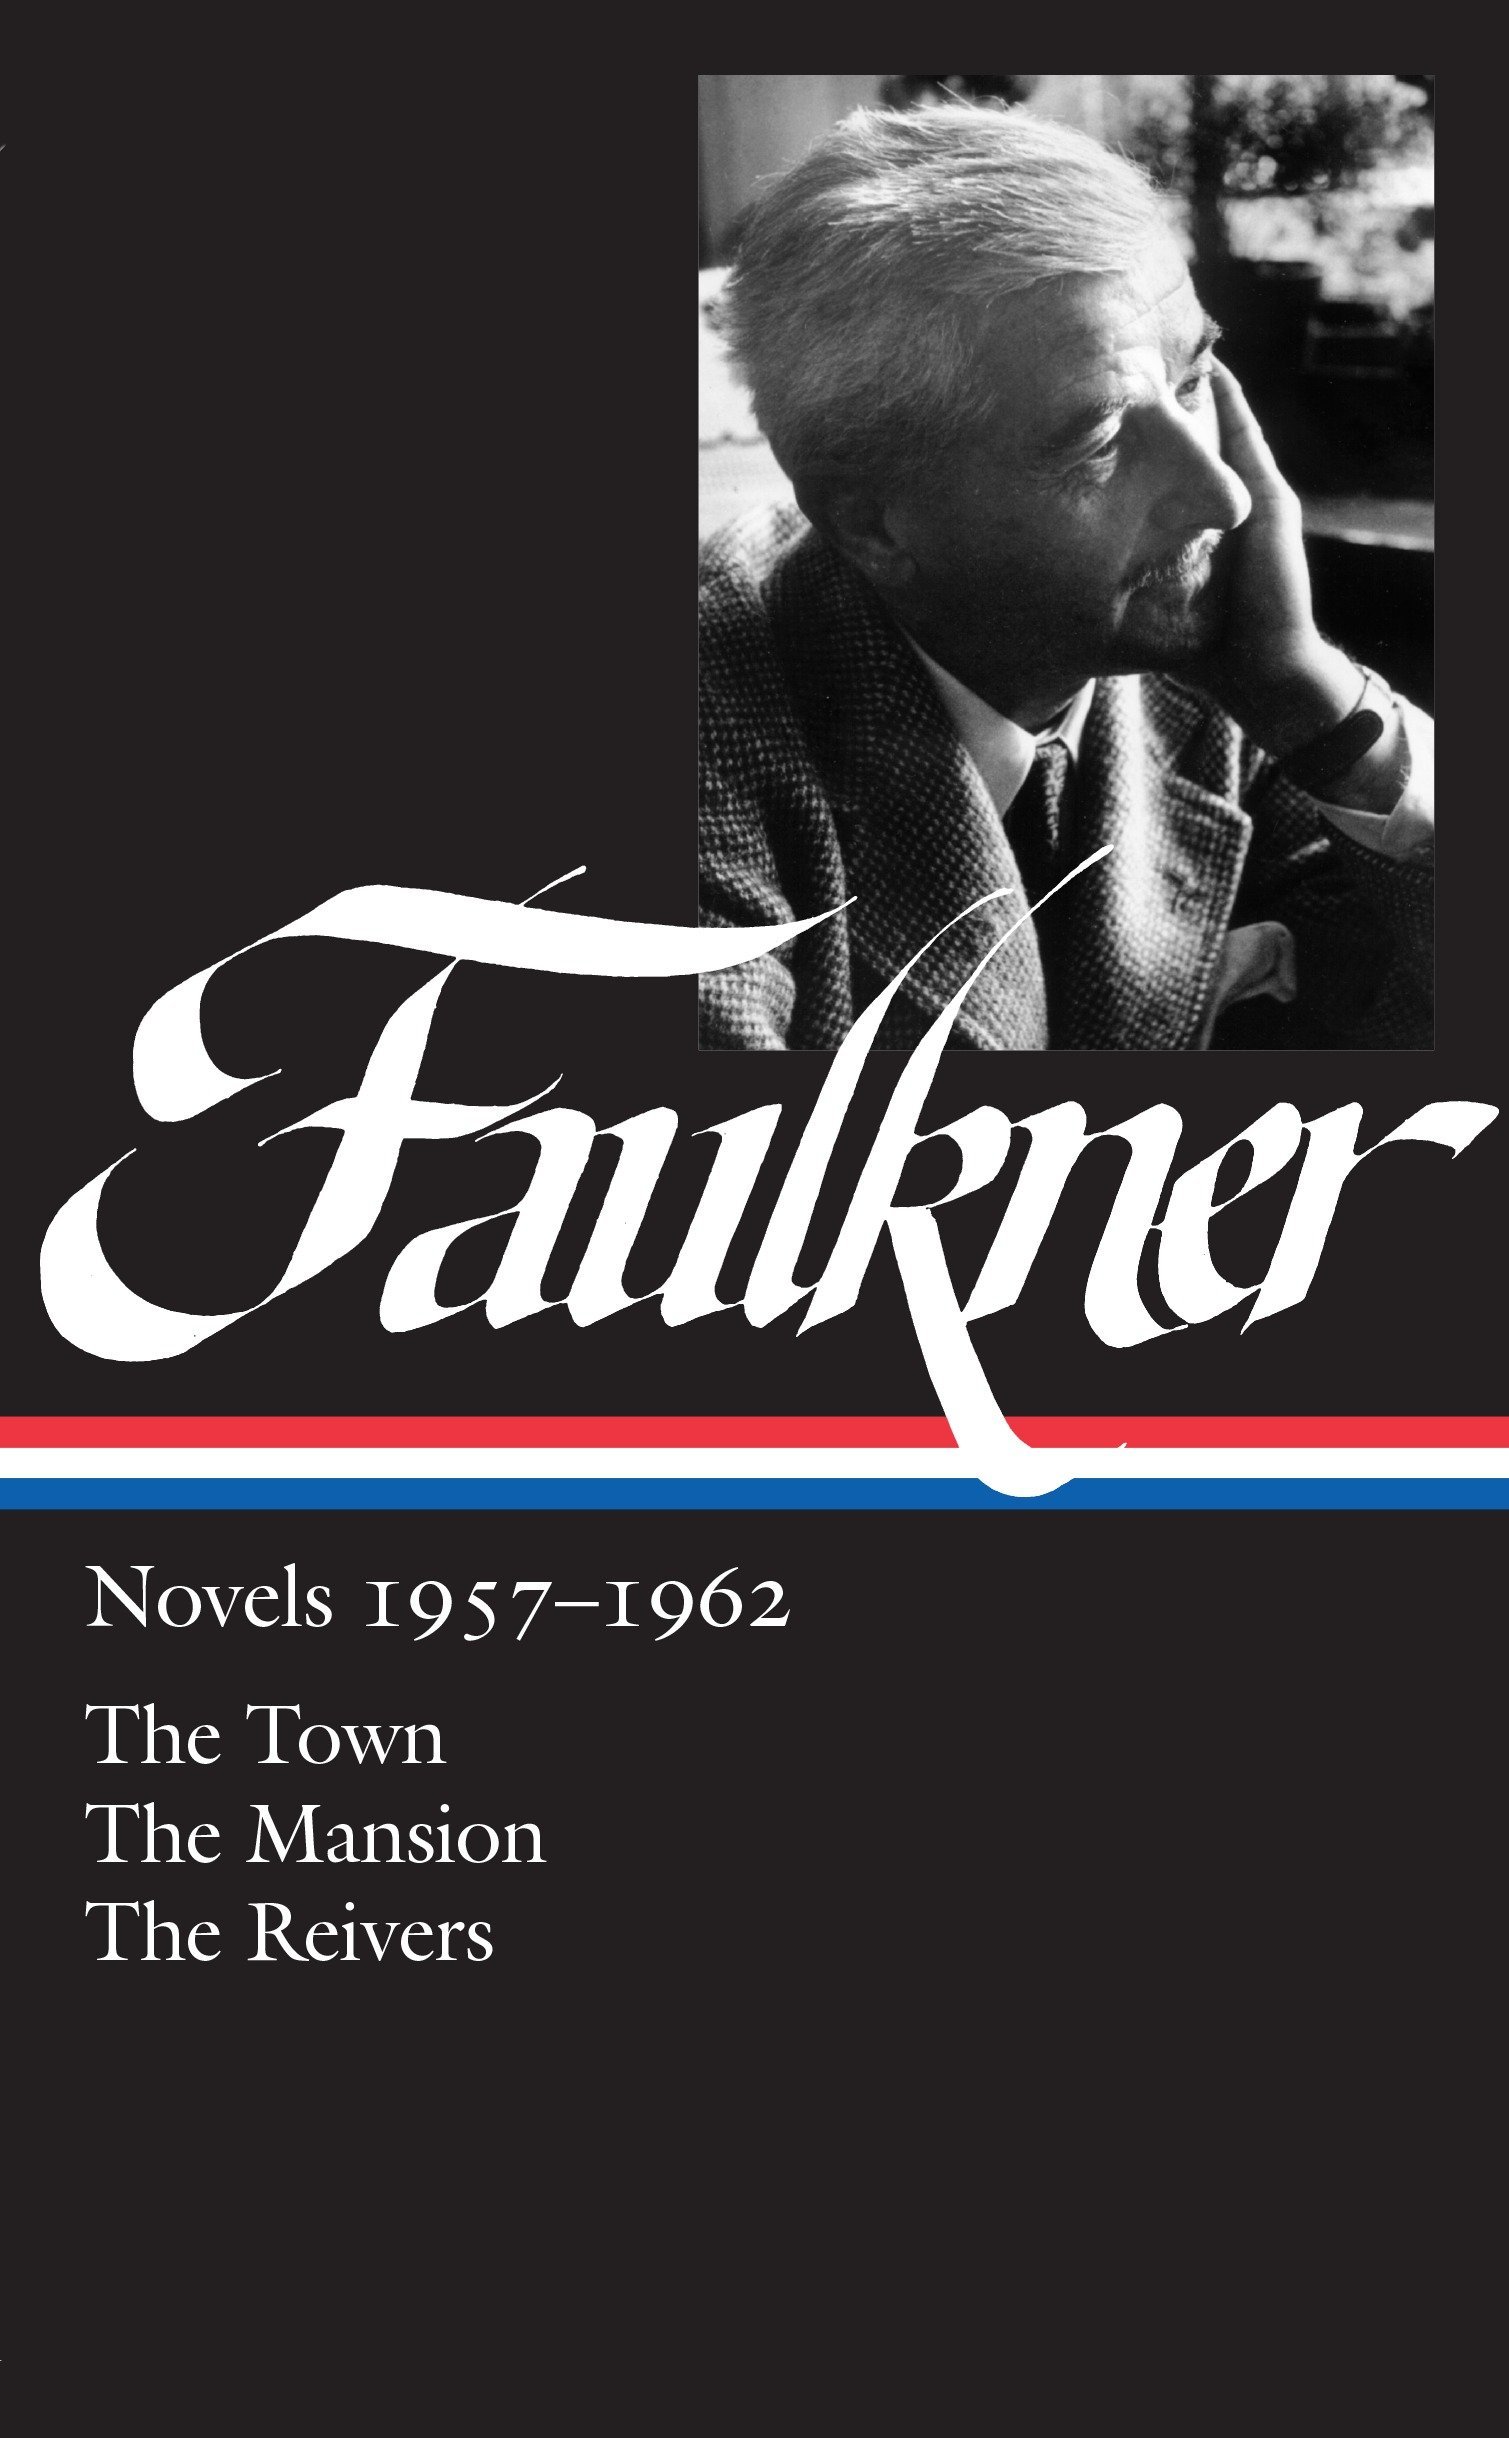 Novels, 1957-1962